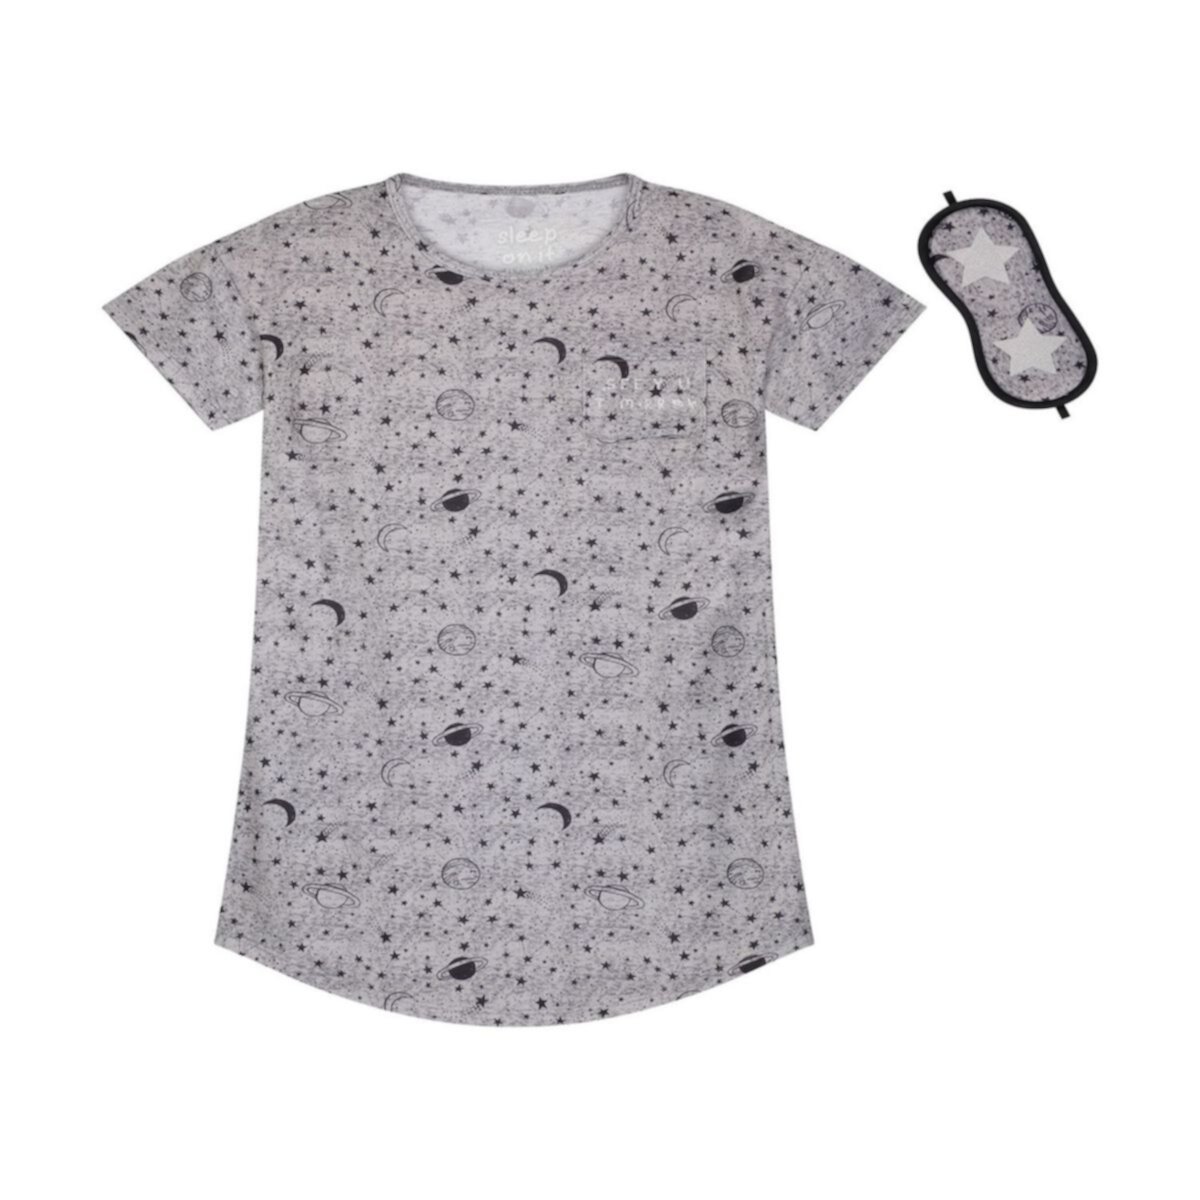 Супермягкая пижамная рубашка из джерси для девочек Sleep On It с соответствующей маской для сна Sleep On It